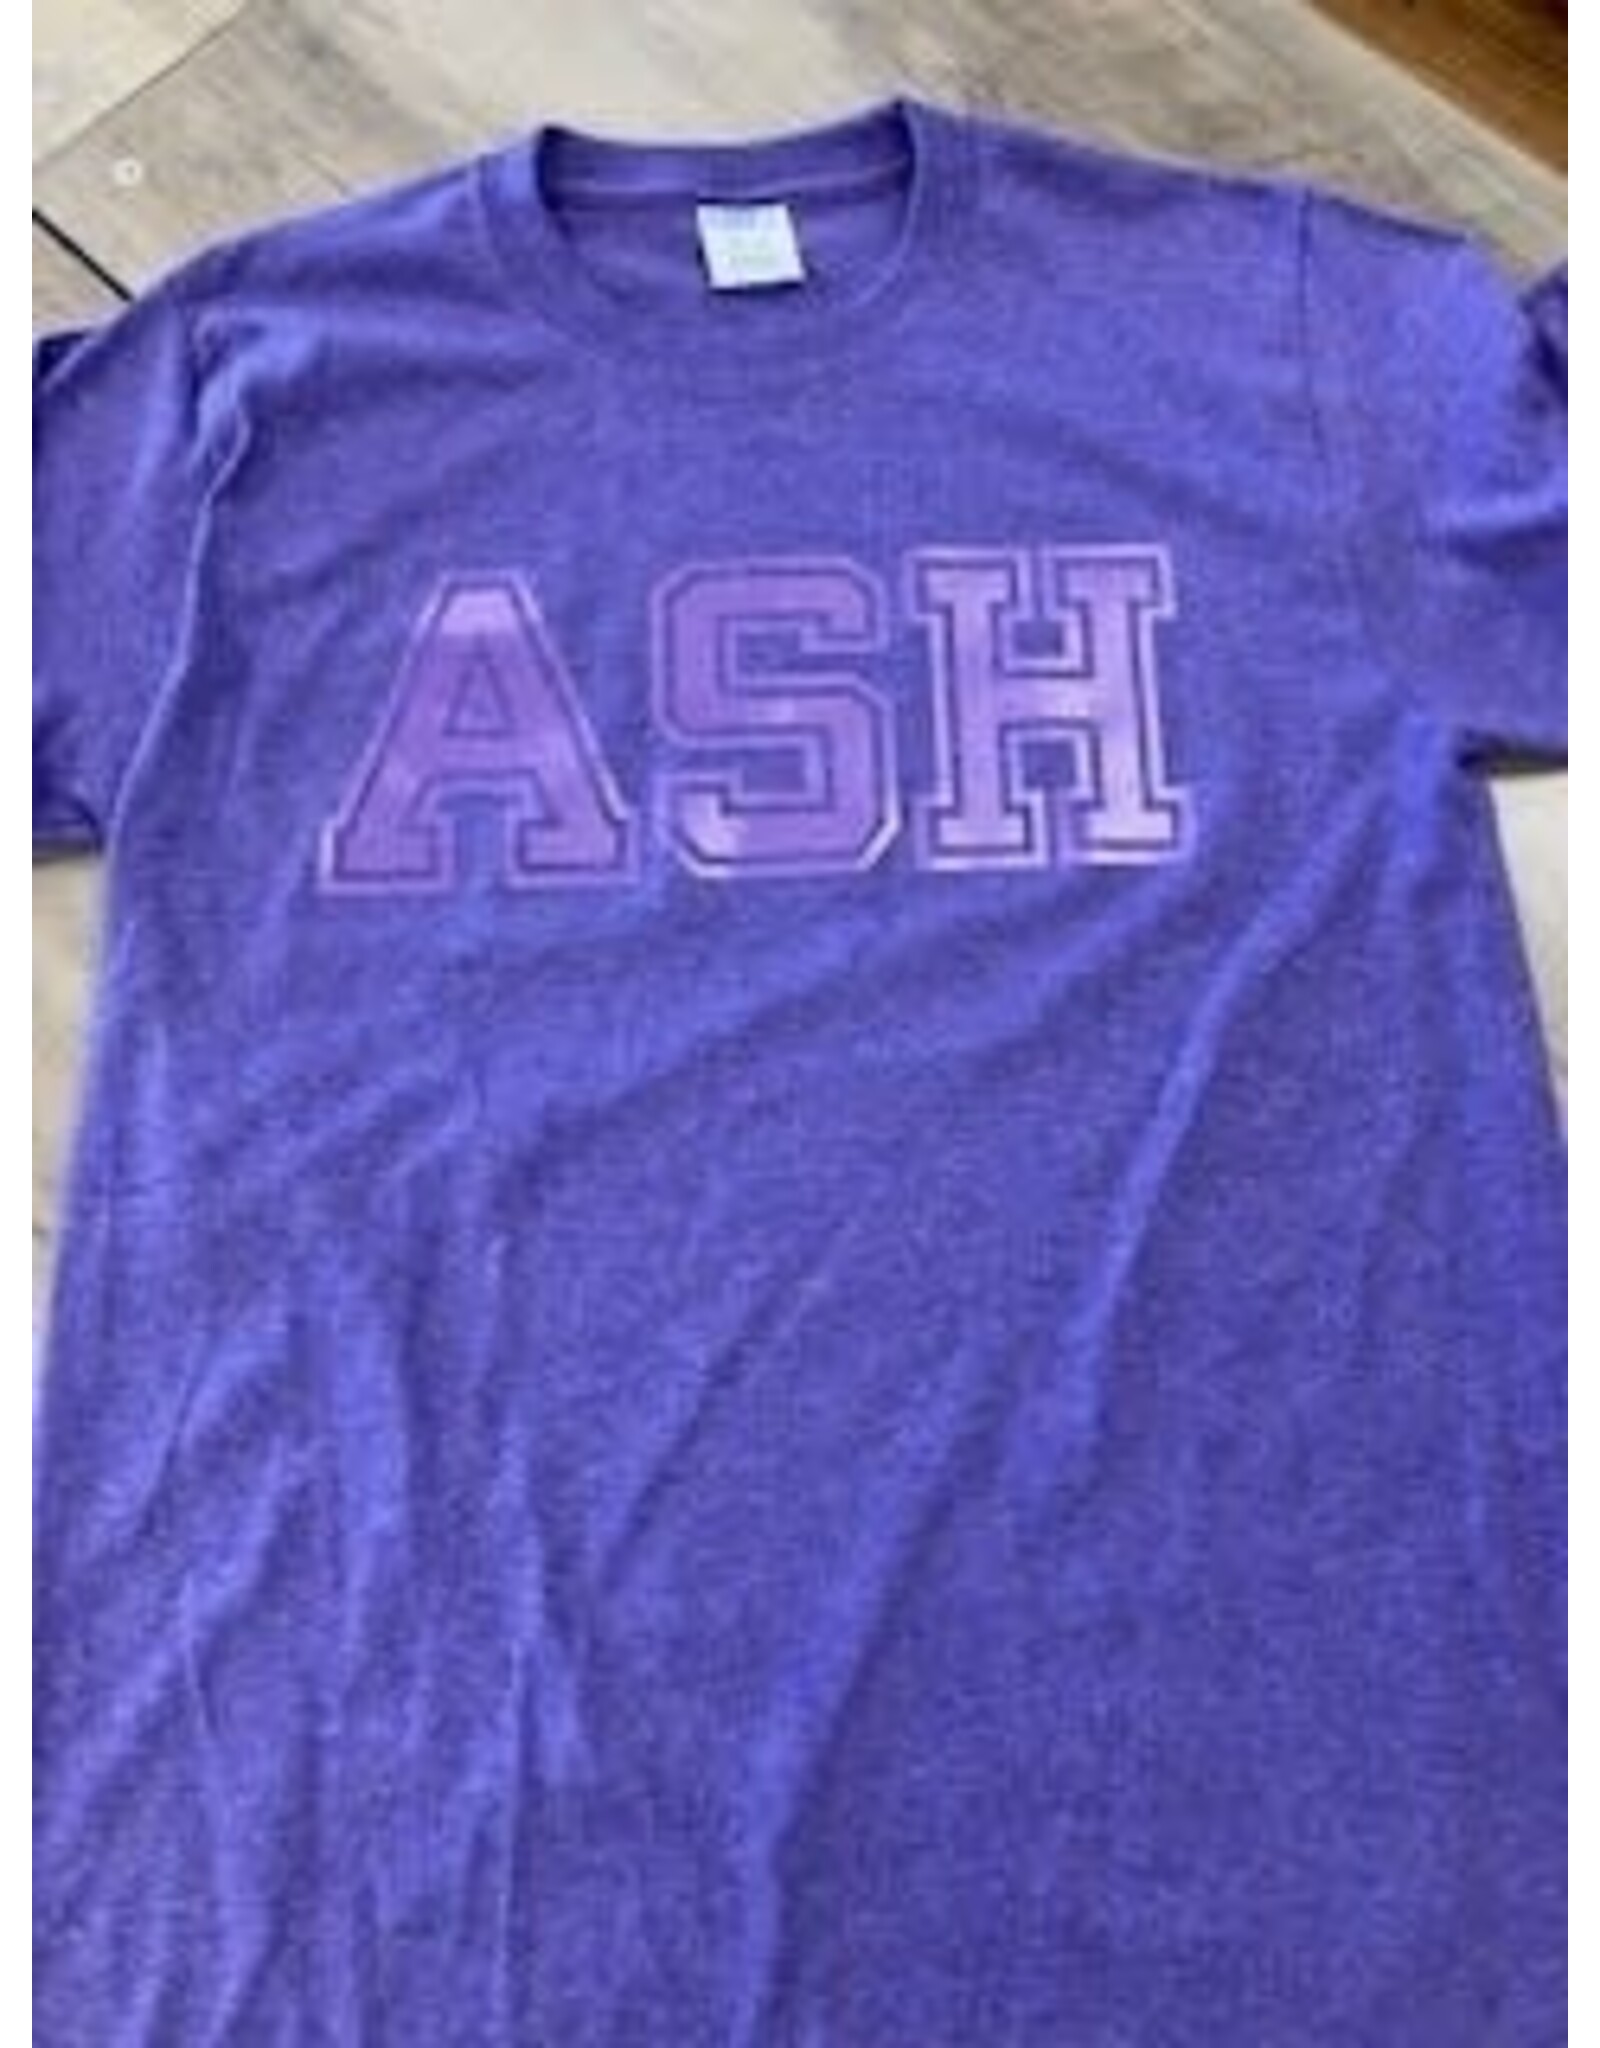 Ash double purple